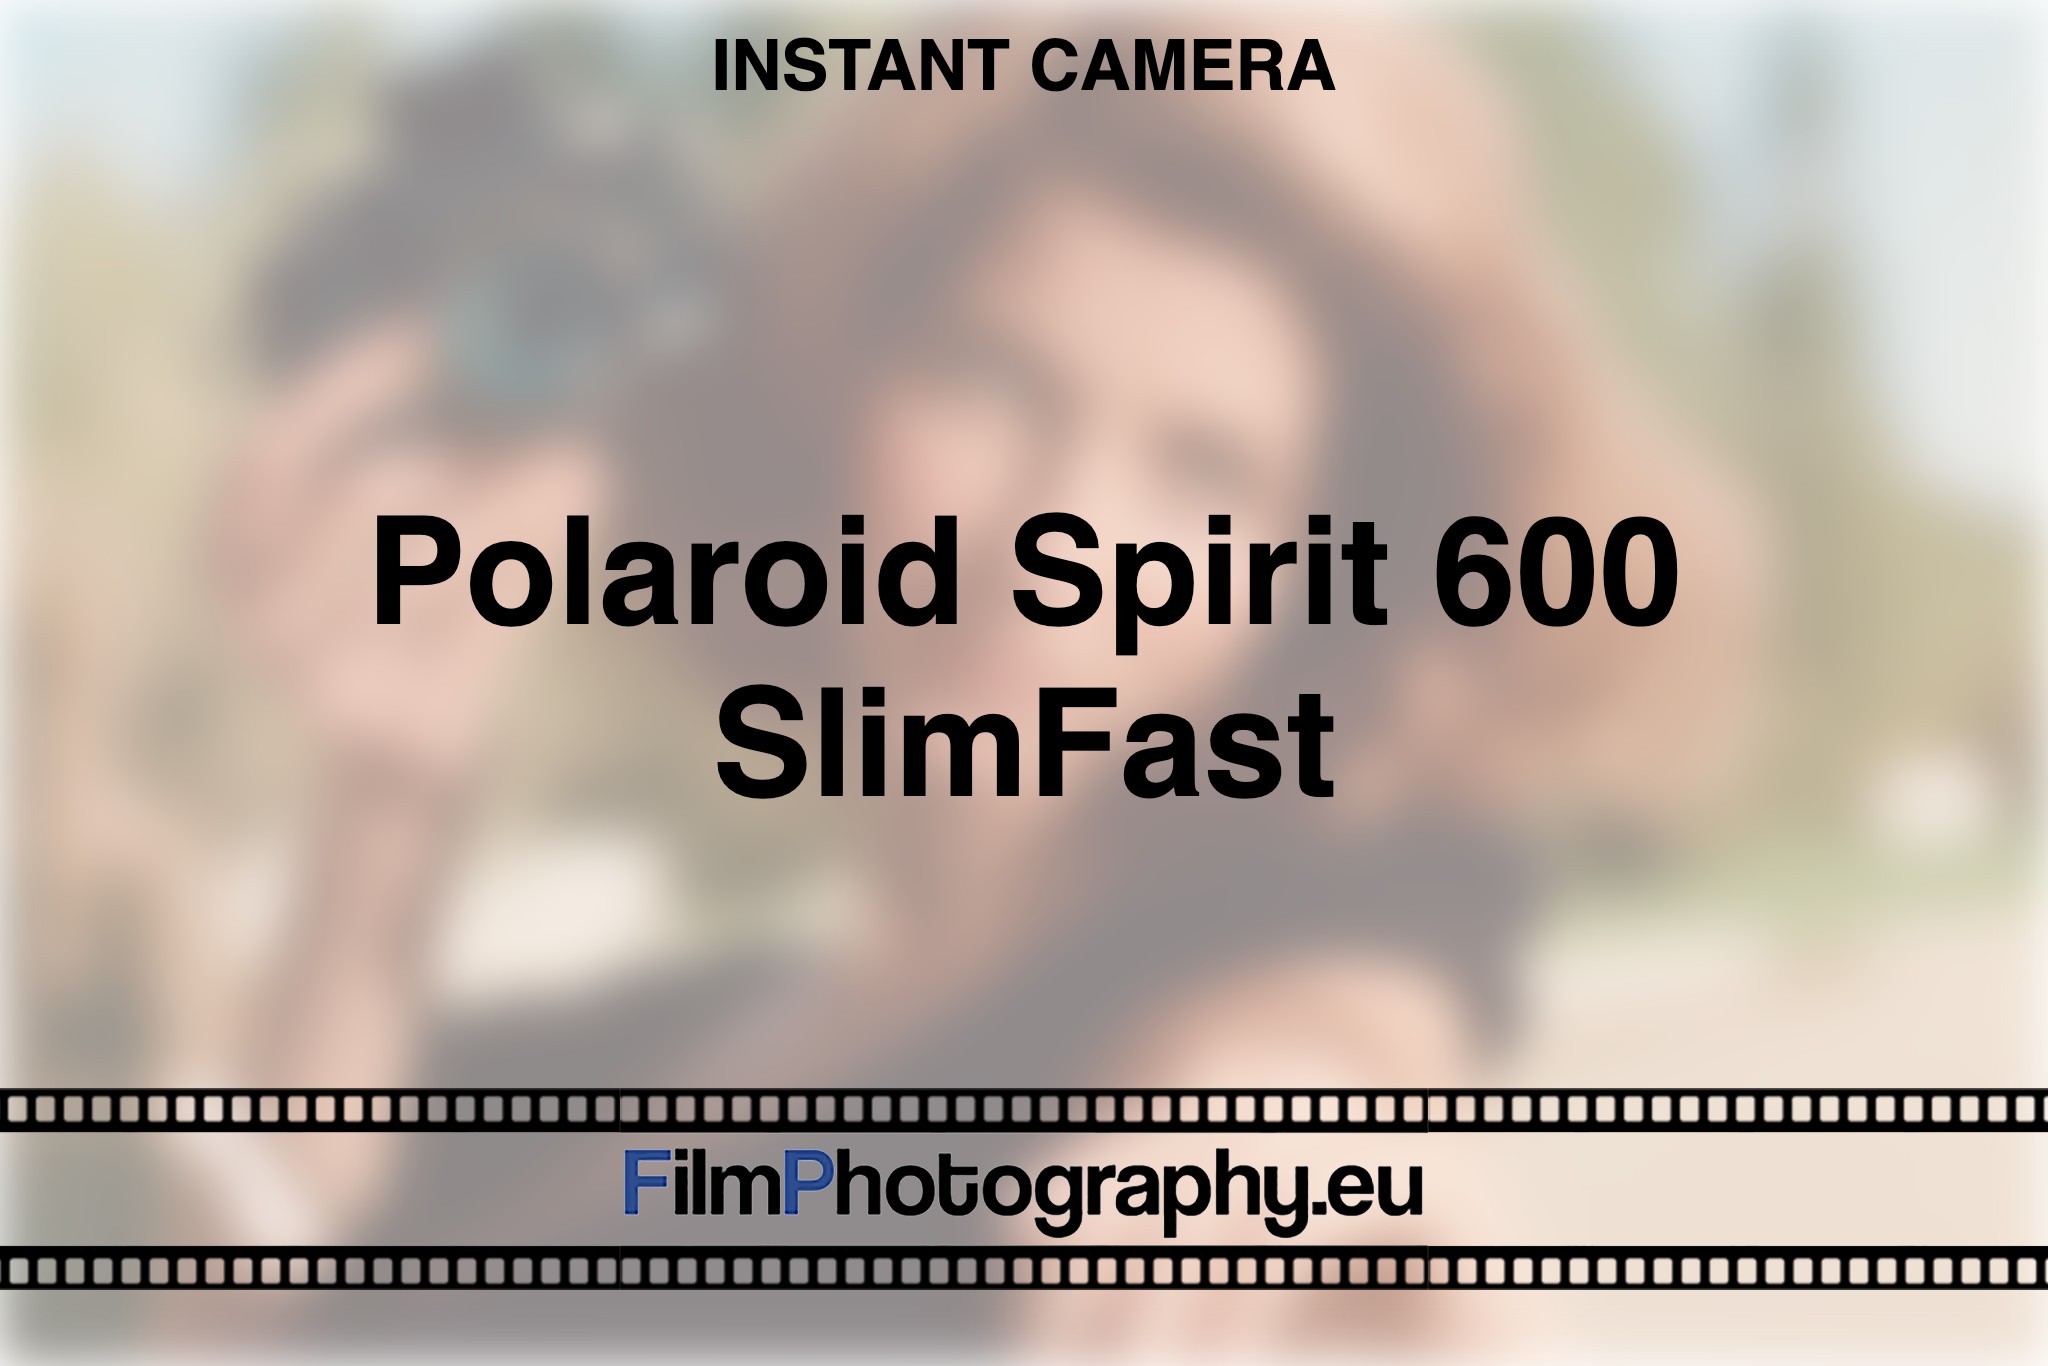 polaroid-spirit-600-slimfast-instant-camera-bnv